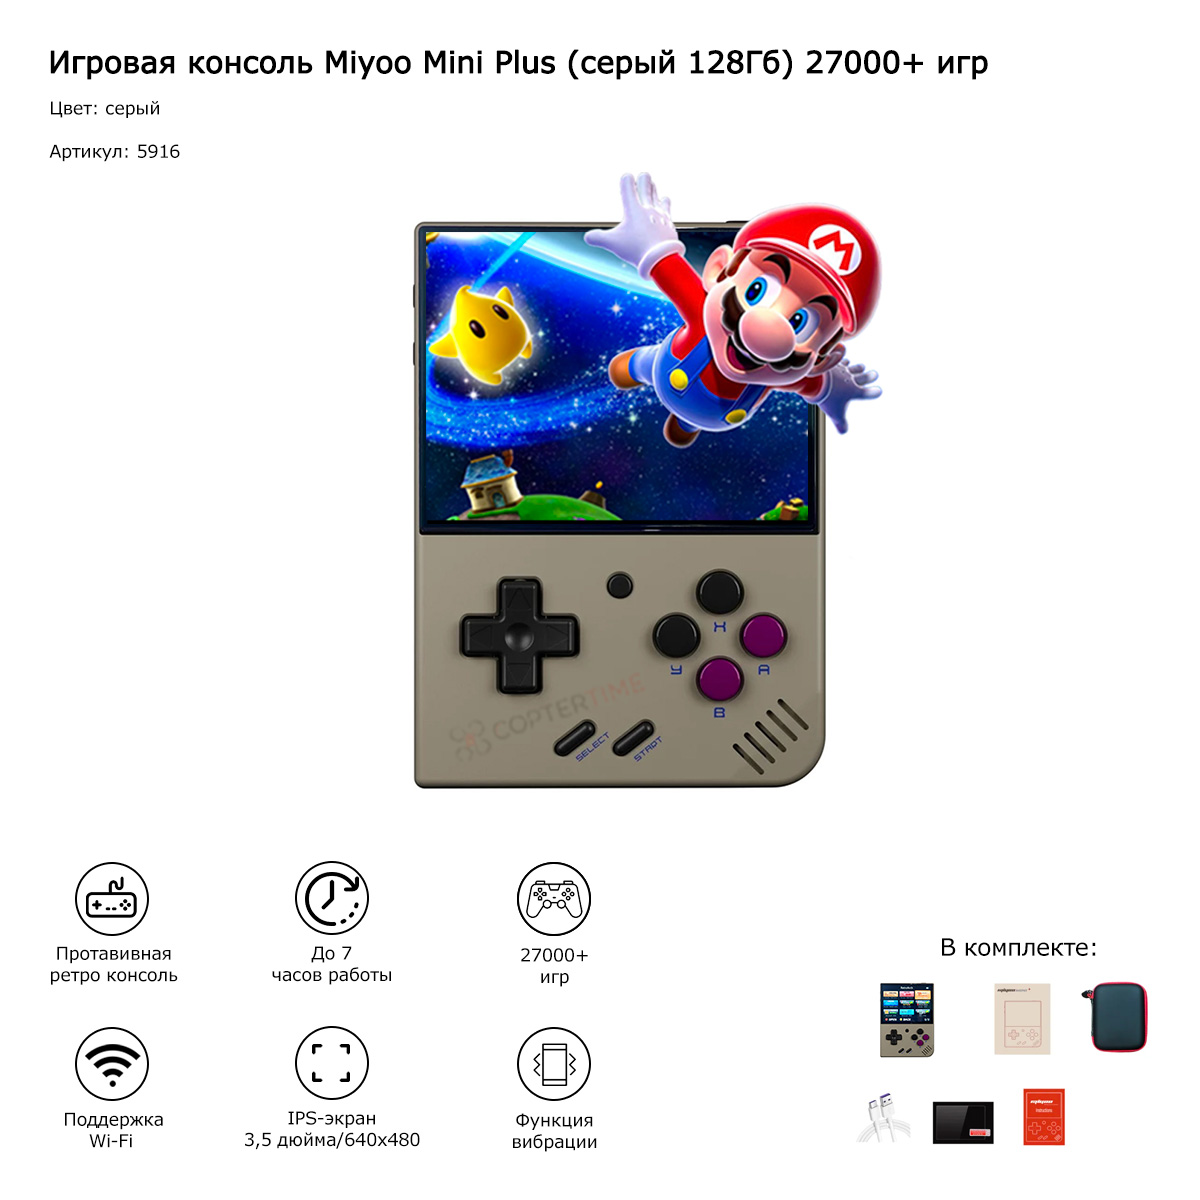 Игровая консоль Miyoo Mini Plus (серый 128Гб) 27000+ игр